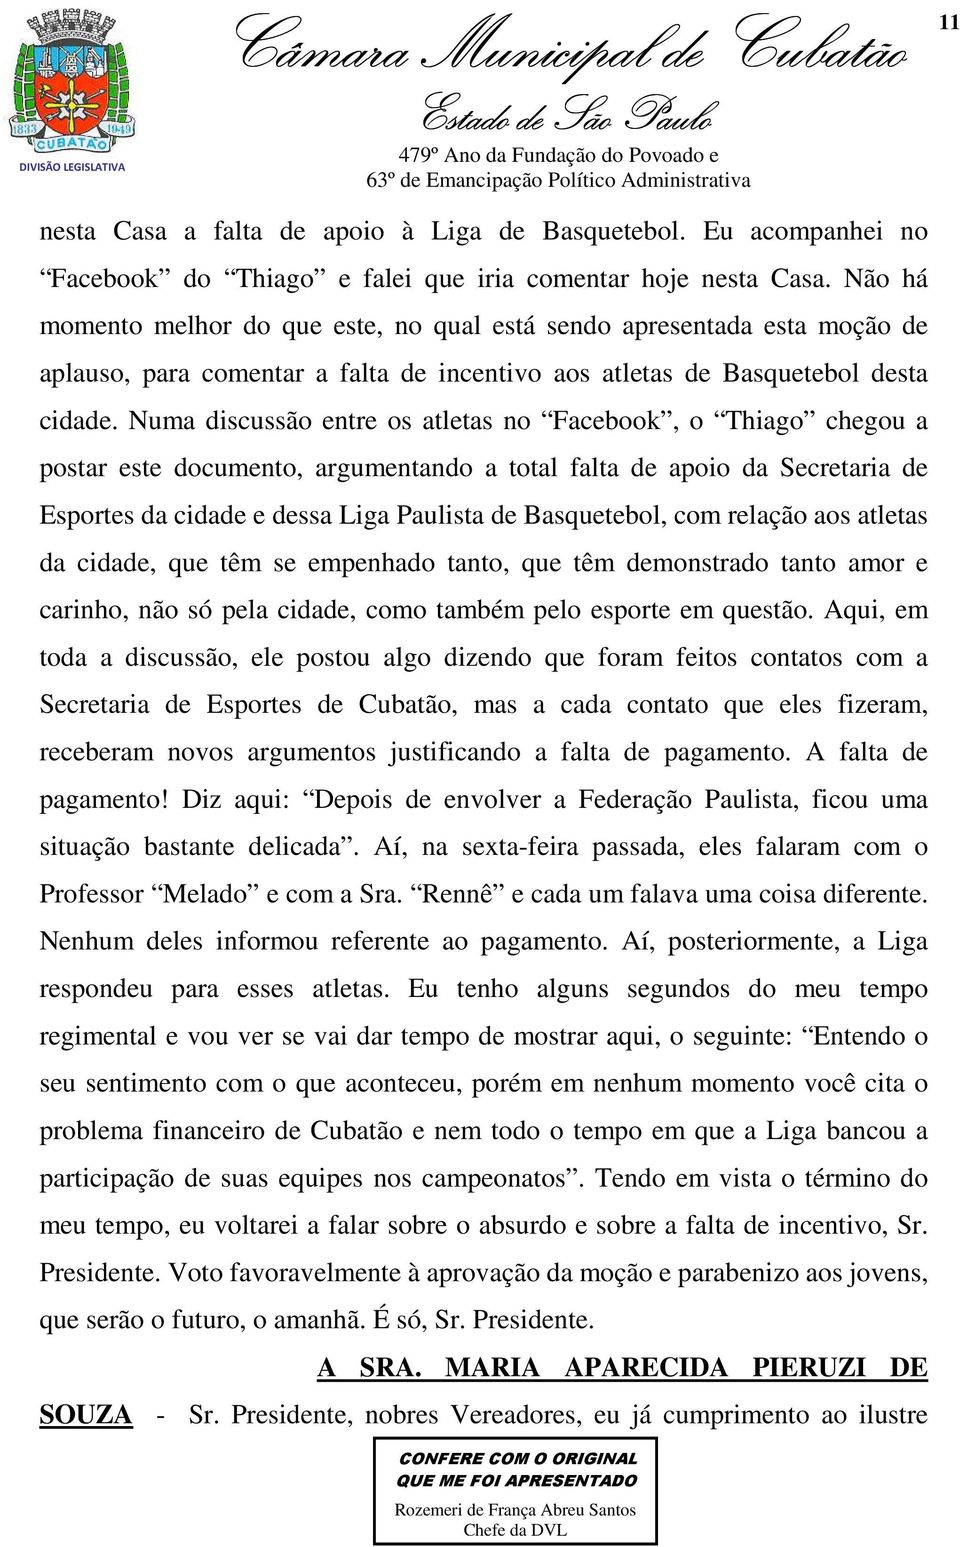 Numa discussão entre os atletas no Facebook, o Thiago chegou a postar este documento, argumentando a total falta de apoio da Secretaria de Esportes da cidade e dessa Liga Paulista de Basquetebol, com